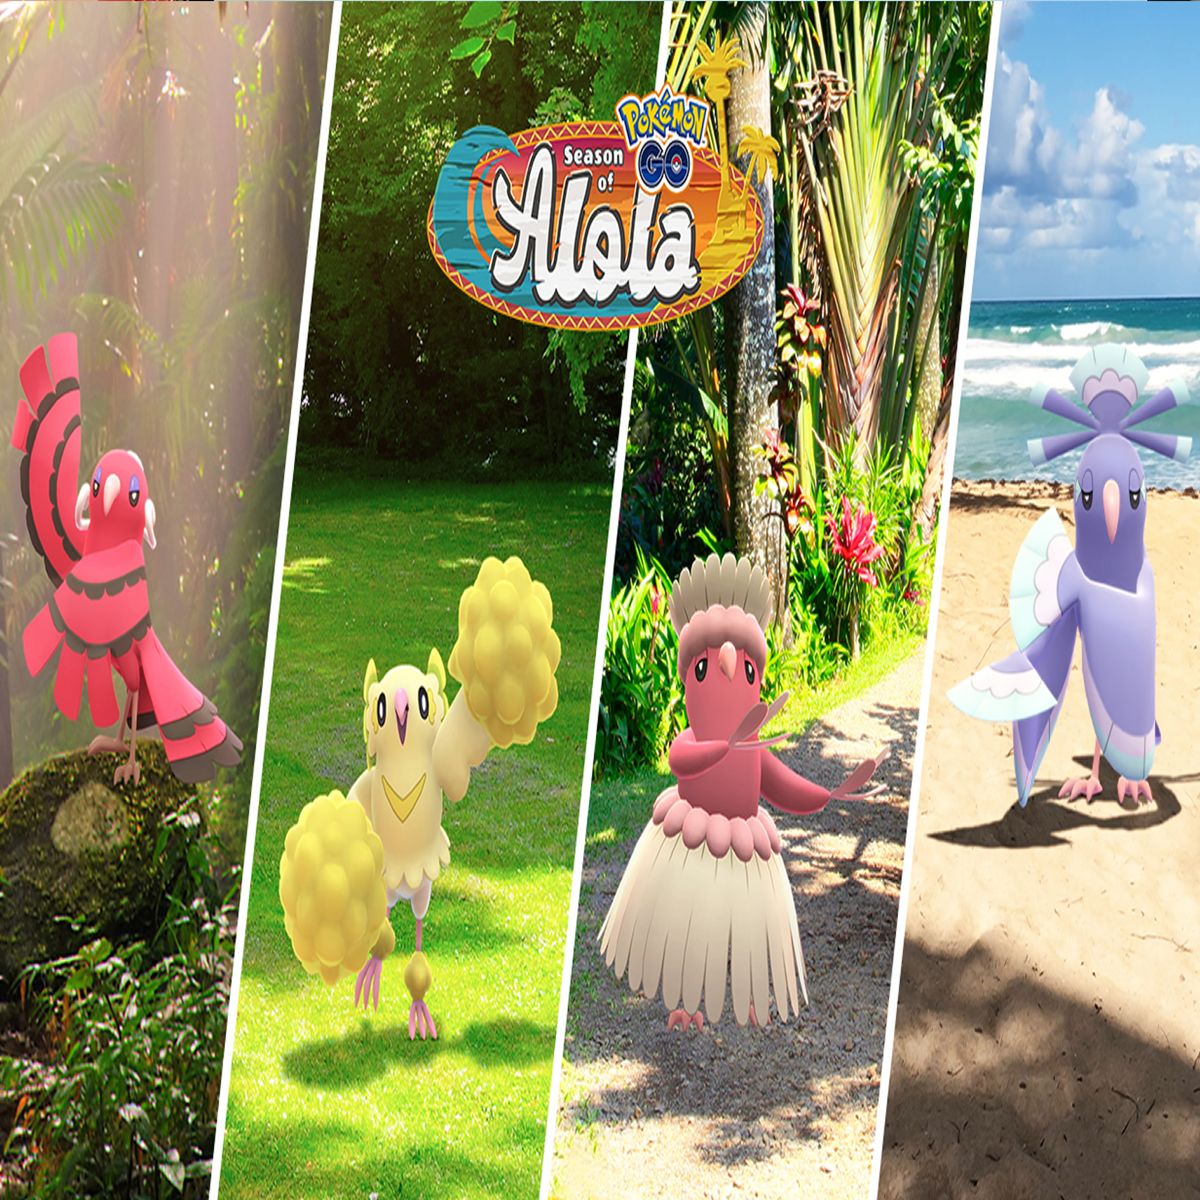 Welcome more Pokémon from Alola with the Season of Alola! – Pokémon GO